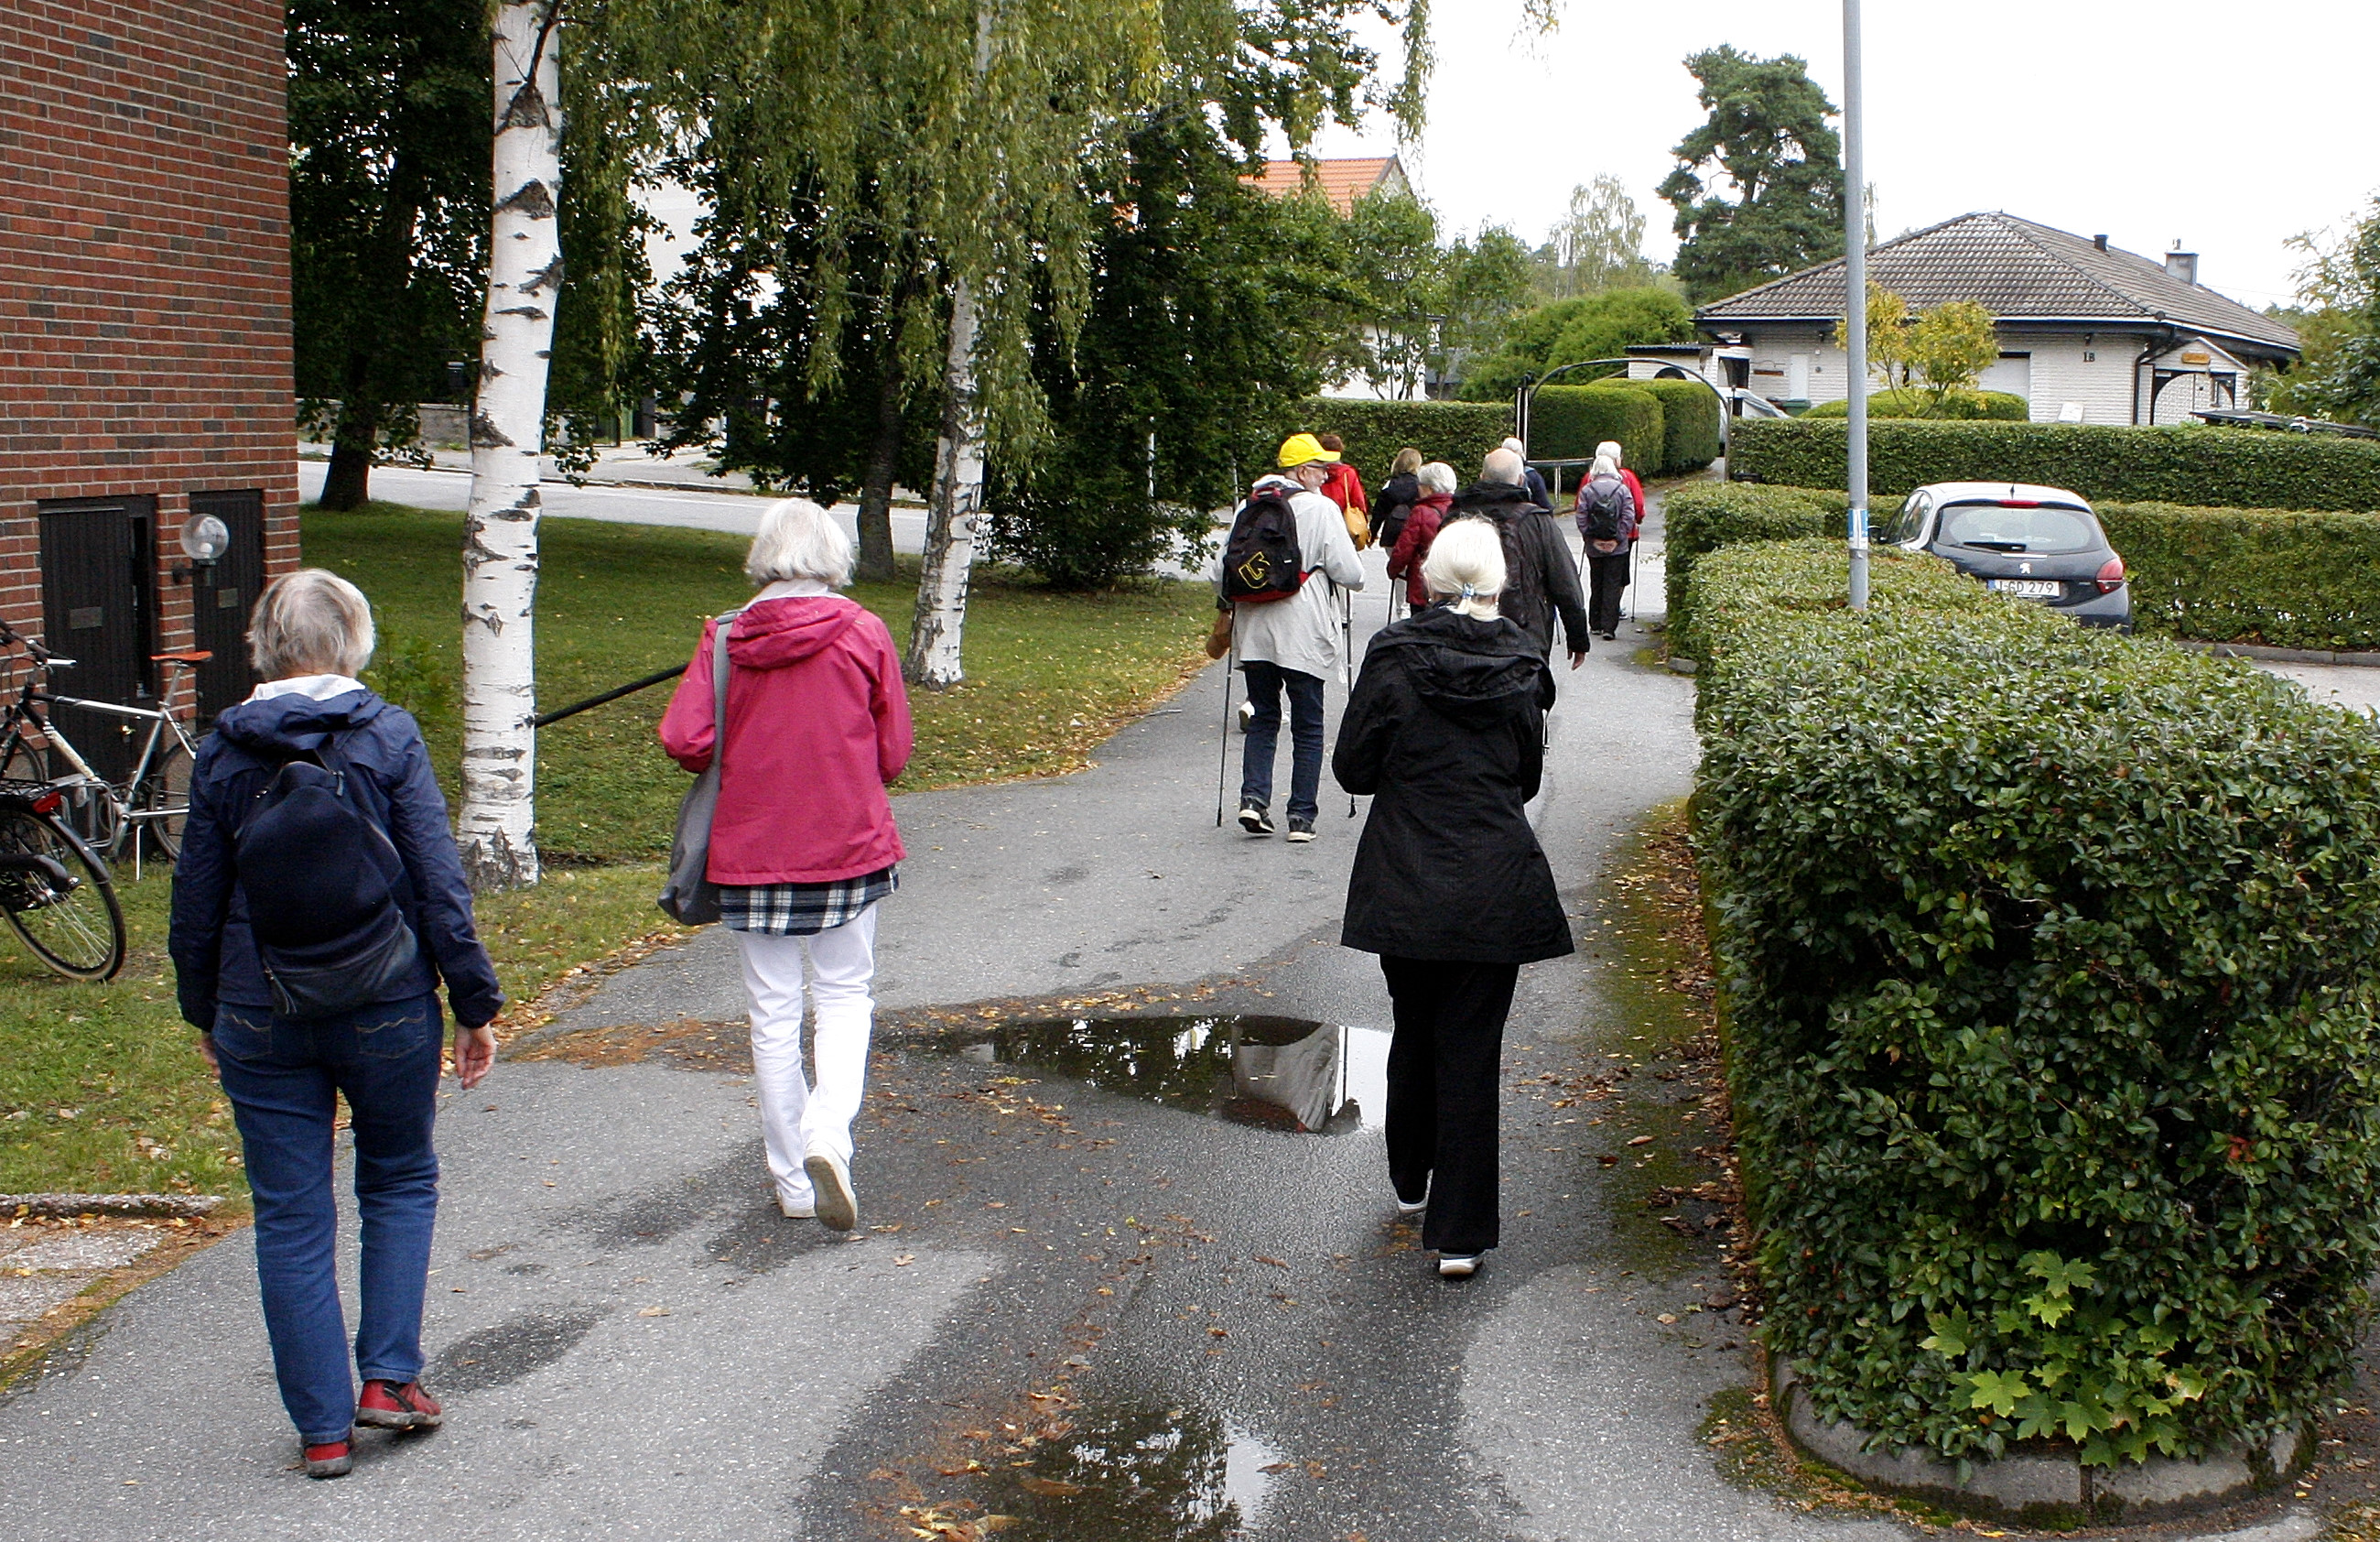 Promenad genom bostadsområde med RPG Järfälla.